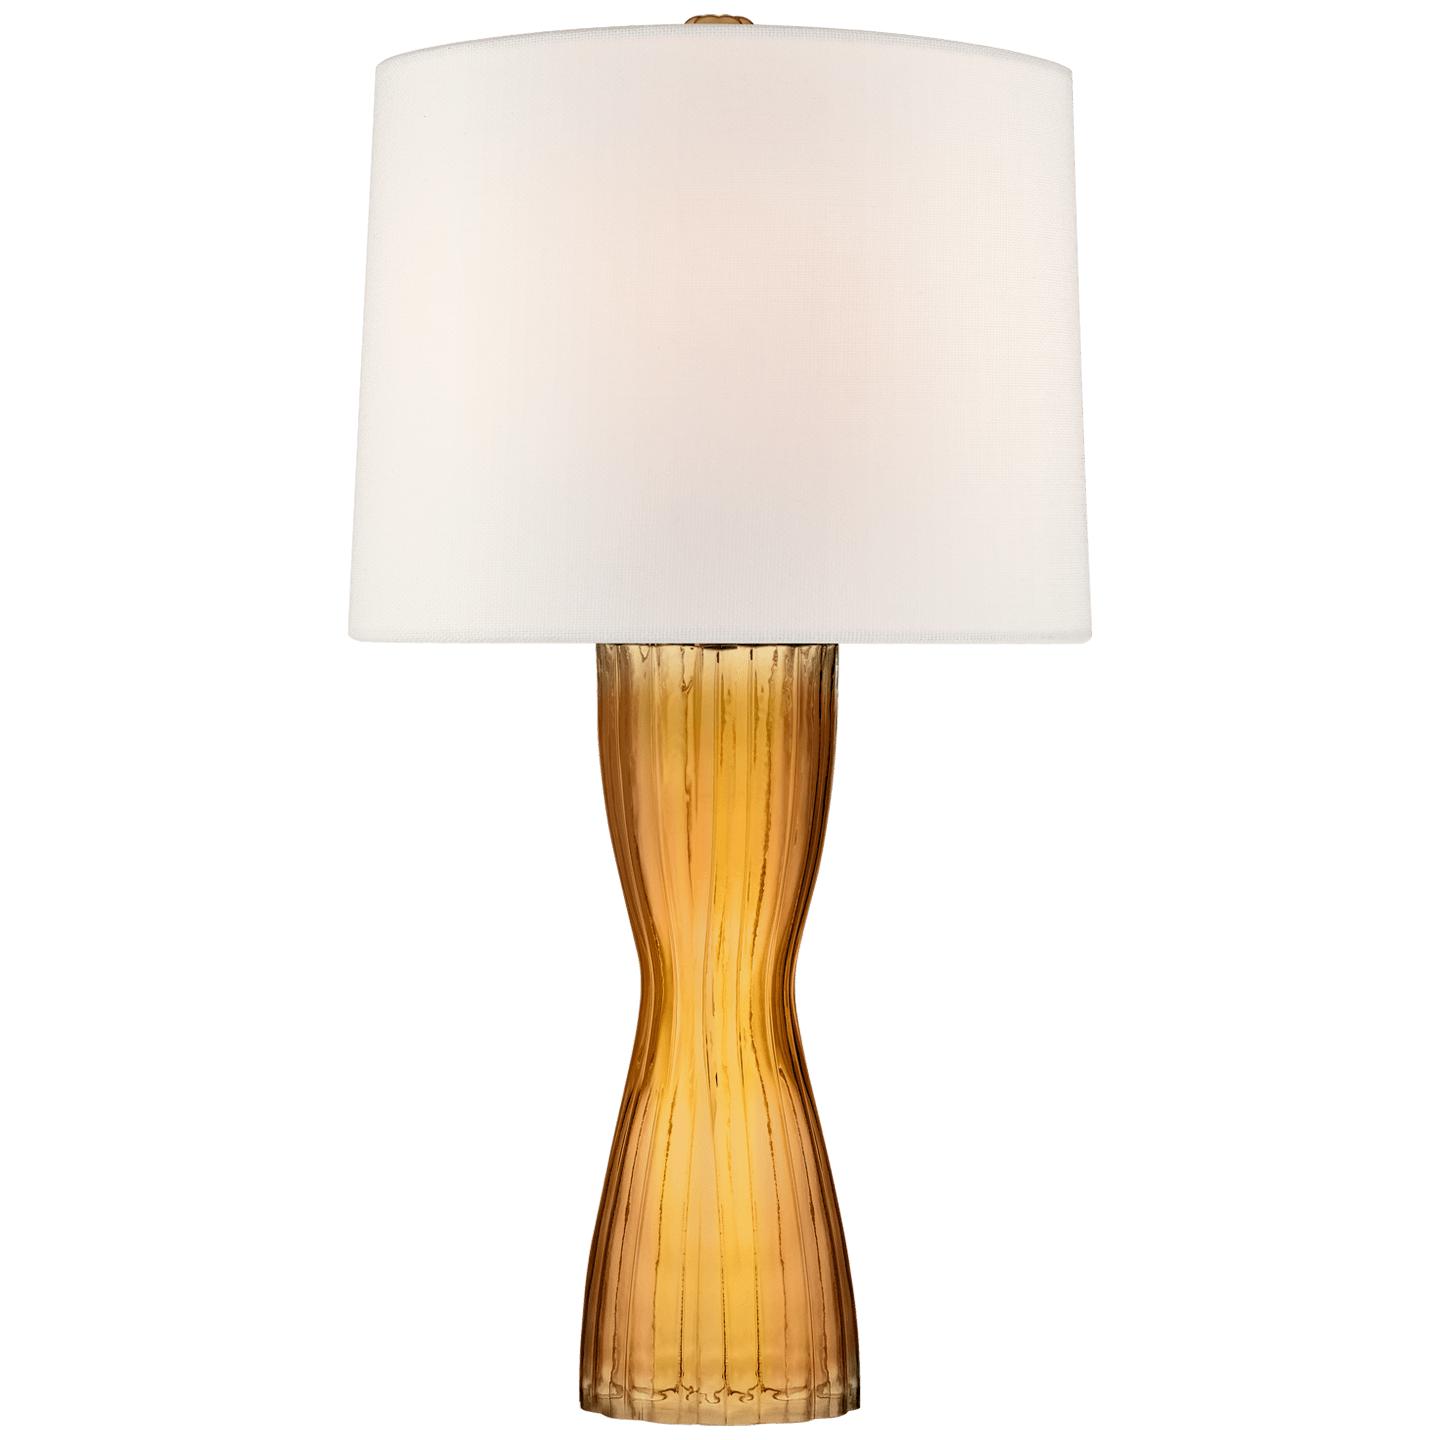 Купить Настольная лампа Seine Medium Table Lamp в интернет-магазине roooms.ru